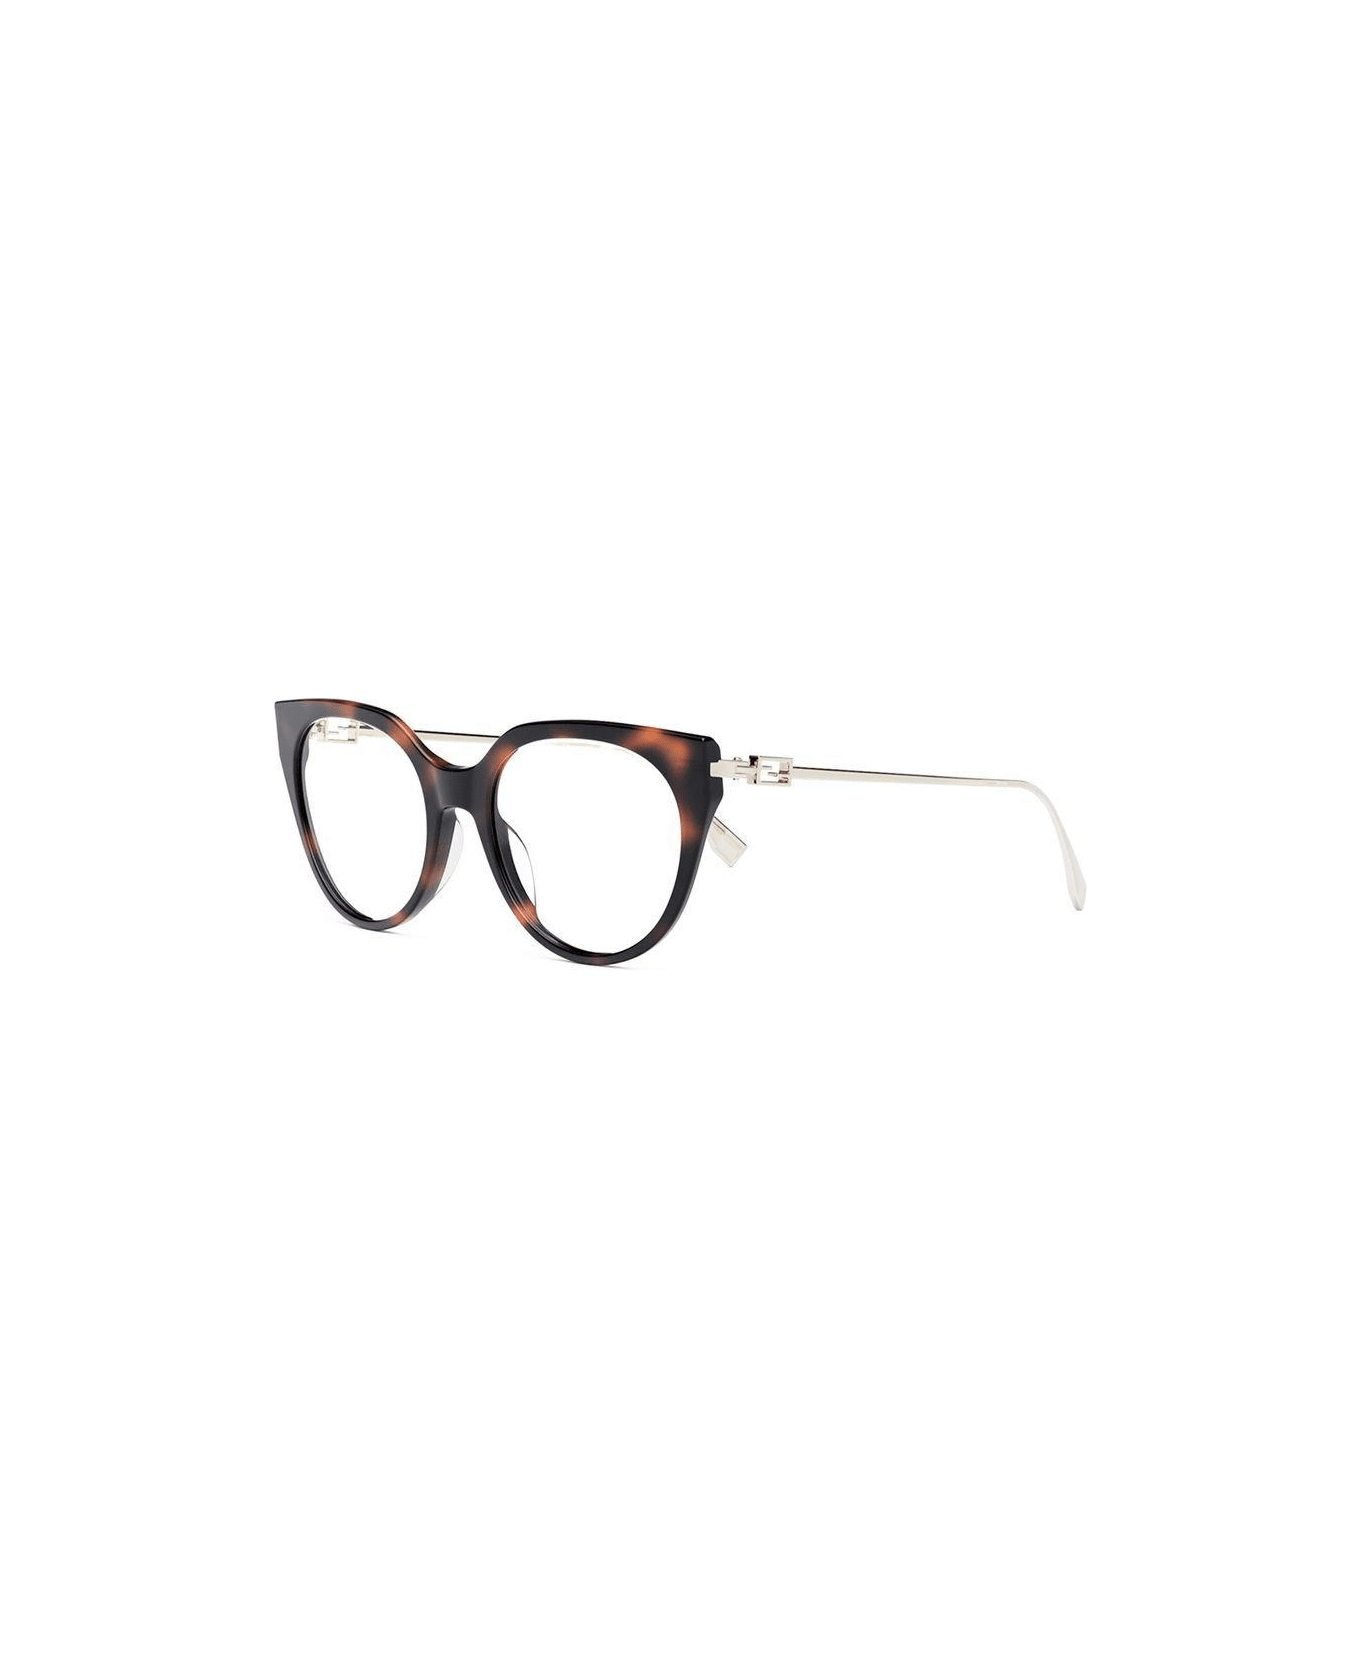 Fendi Eyewear Cat-eye Glasses - 054